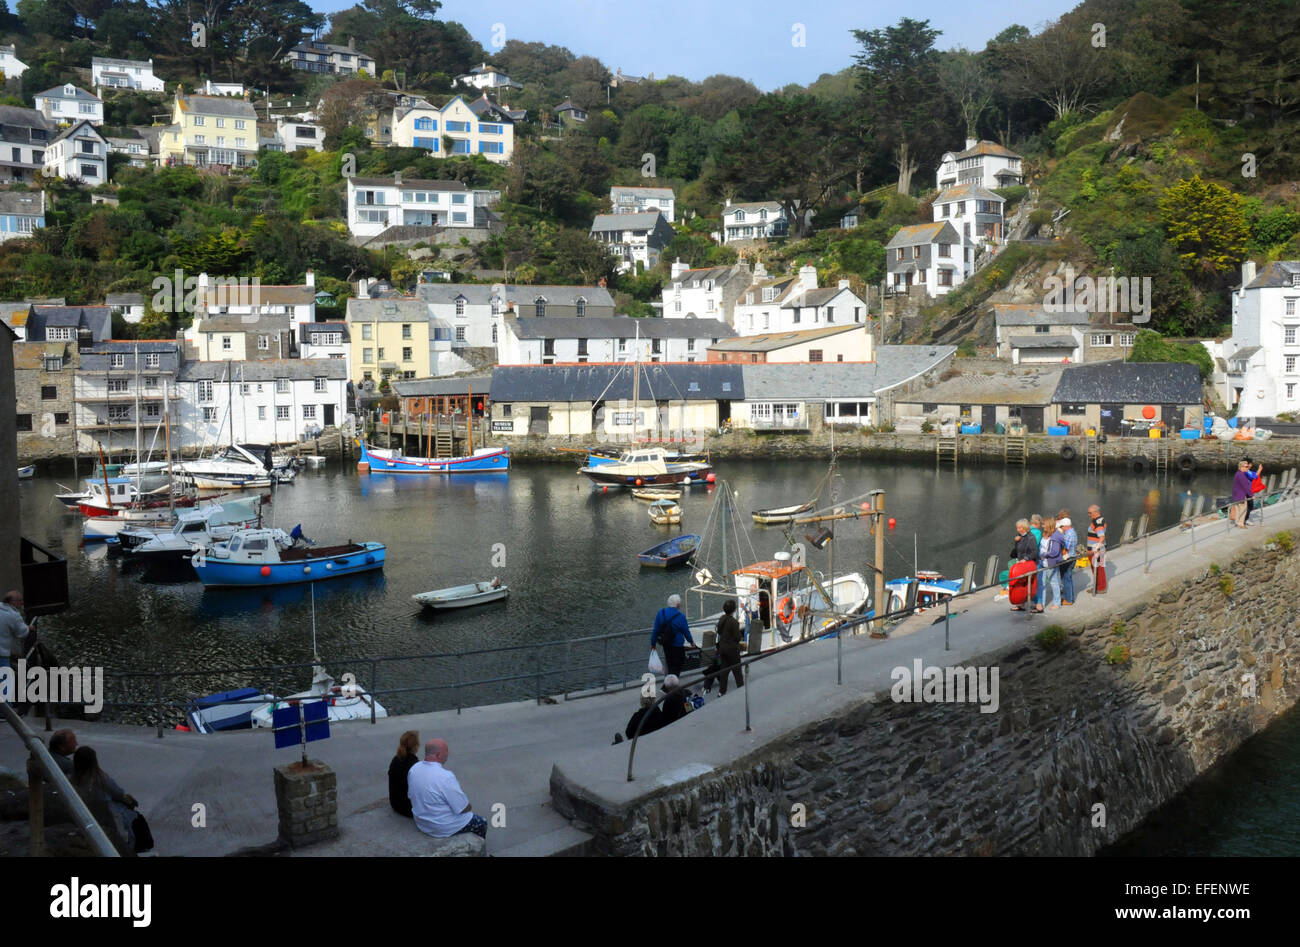 September 2014 am malerischen Hafen von Fischen Dorf von Polperro, Cornwall. PIC Mike Walker, Mike Walker Bilder Stockfoto